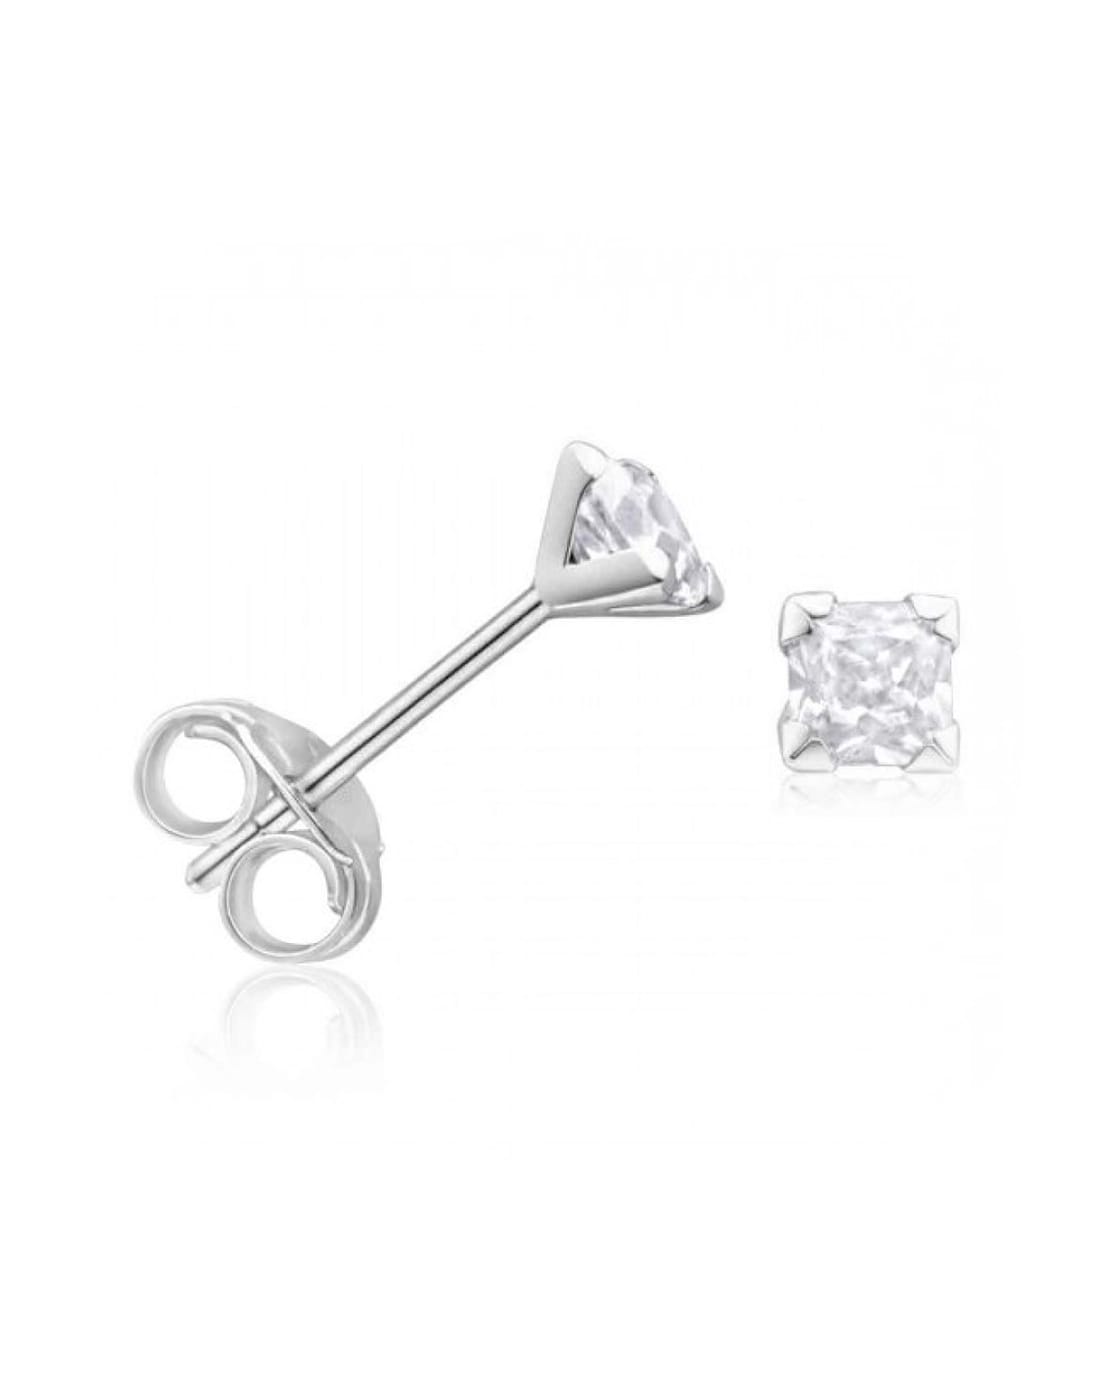 Stud Earring Set | Gold diamond earrings studs, Gold diamond studs, Silver  circle earrings